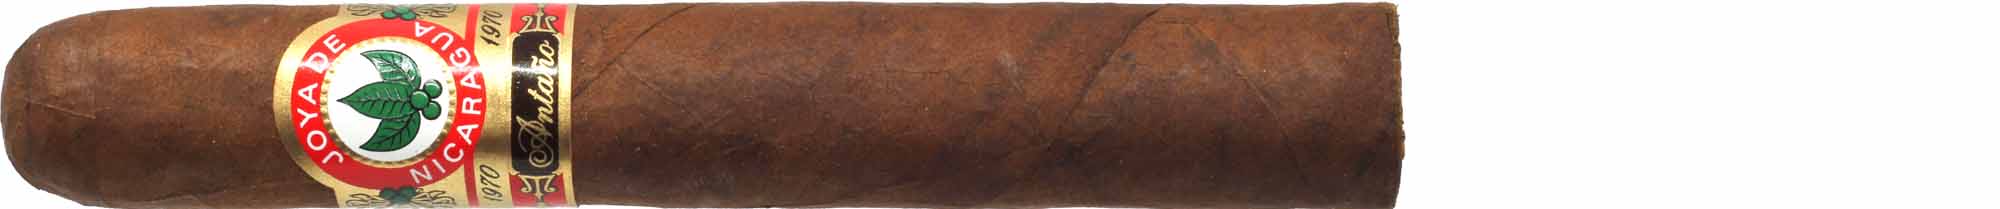 Joya de Nicaragua Zigarren Antaño 1970 Robusto Grande